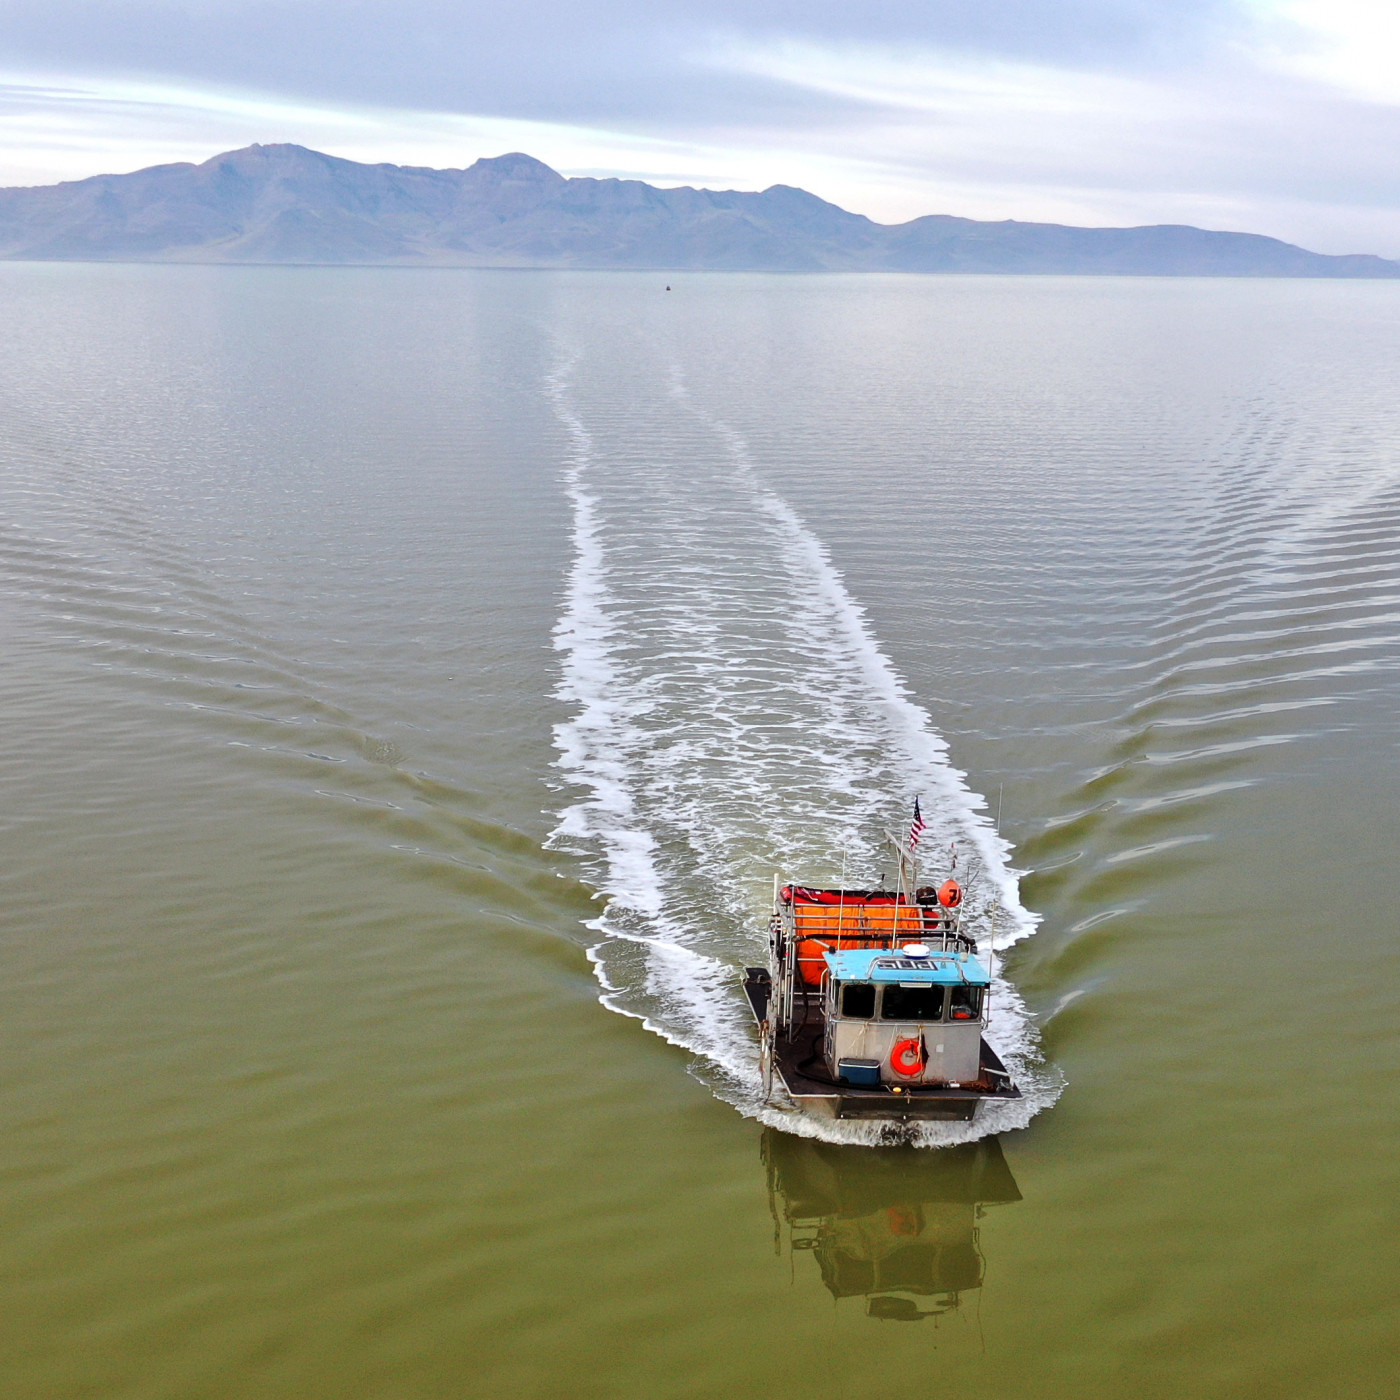 Harvester boat navigating Great Salt Lake during the annual brine shrimp (Artemia) harvest. Courtesy Great Salt Lake Artemia.